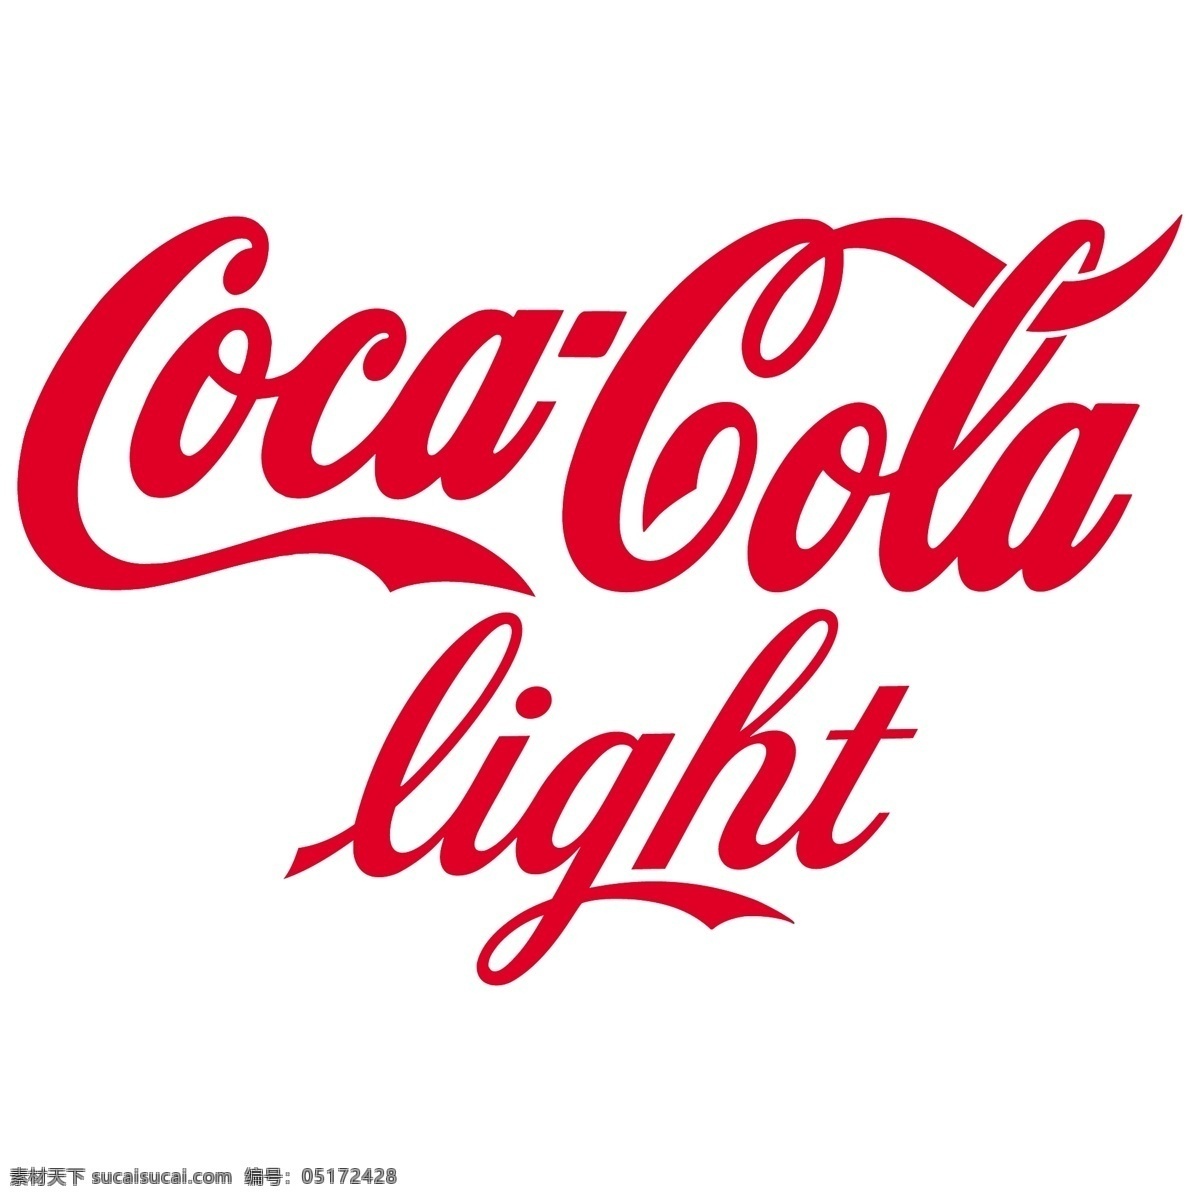 可口可乐 轻 免费 健 怡 标志 psd源文件 logo设计